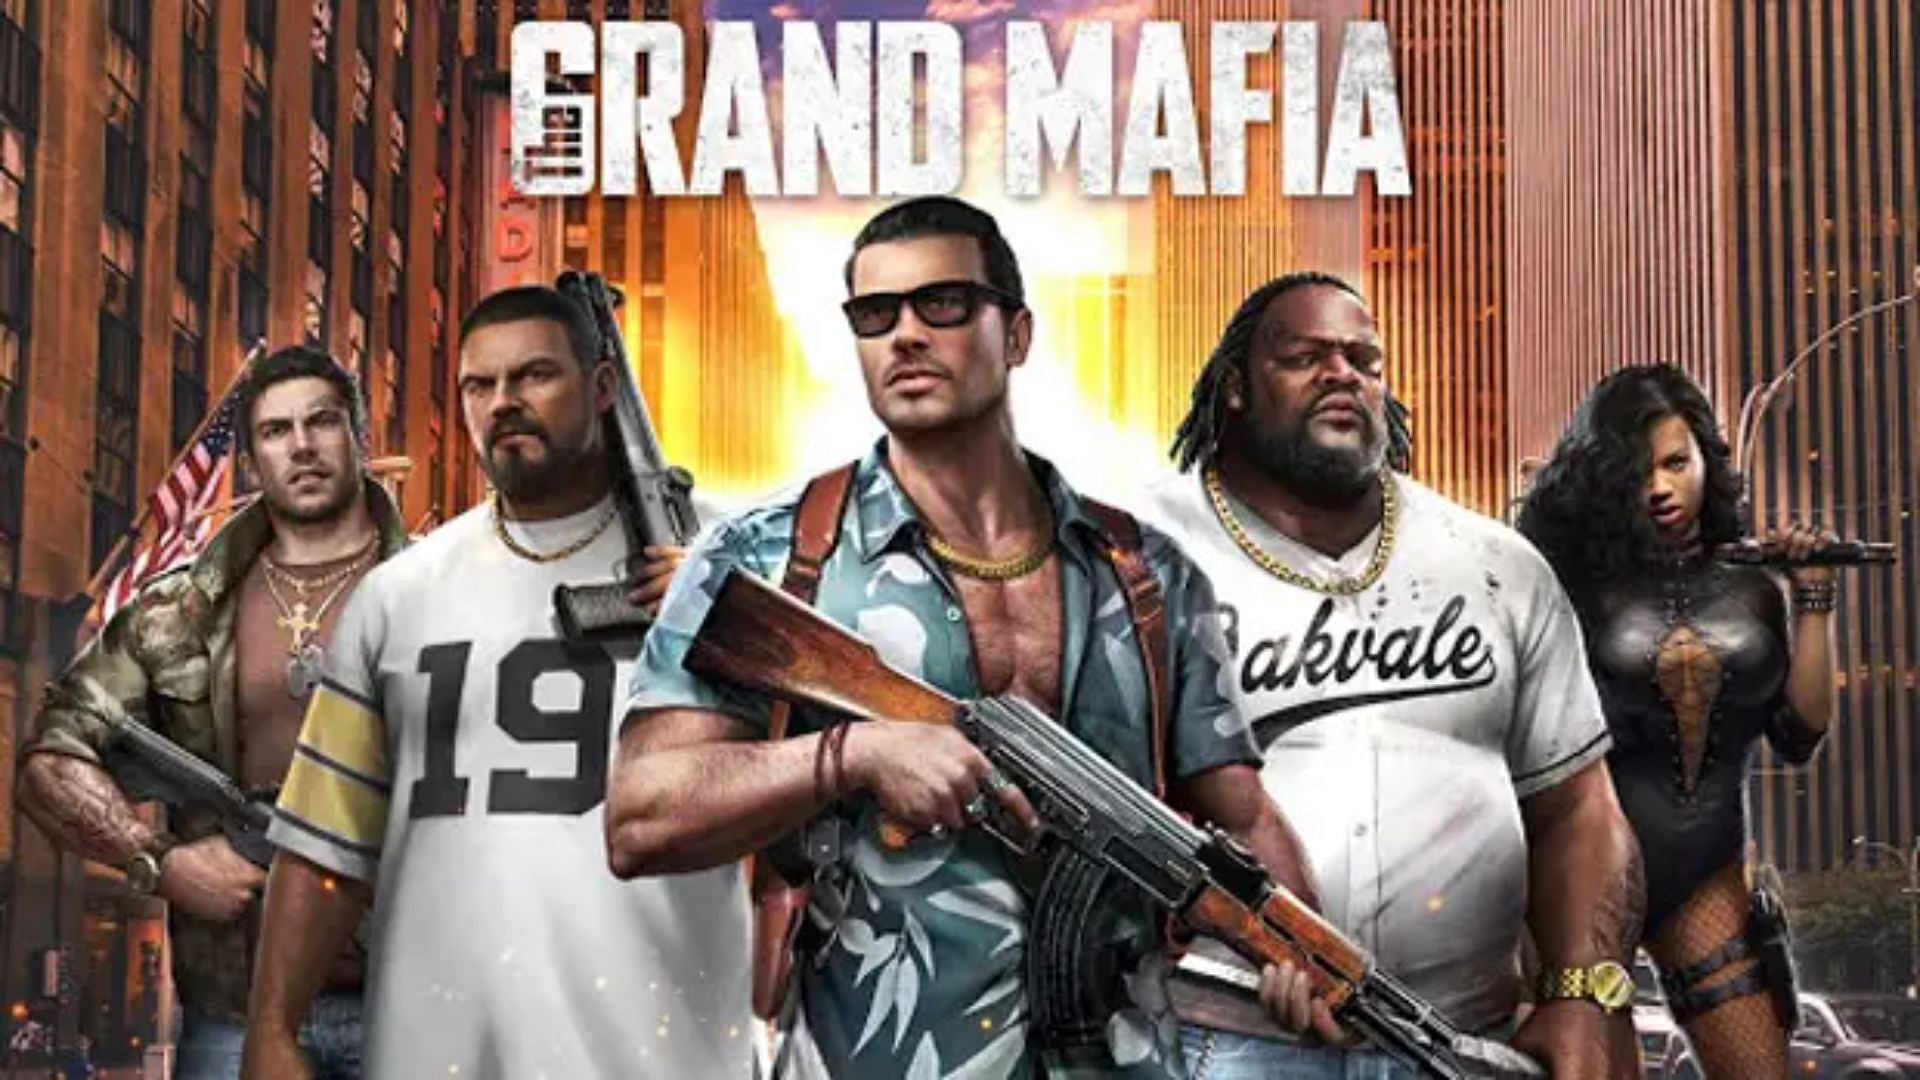 The Grand Mafia Promo Picture (Image via Hardcore Droid)